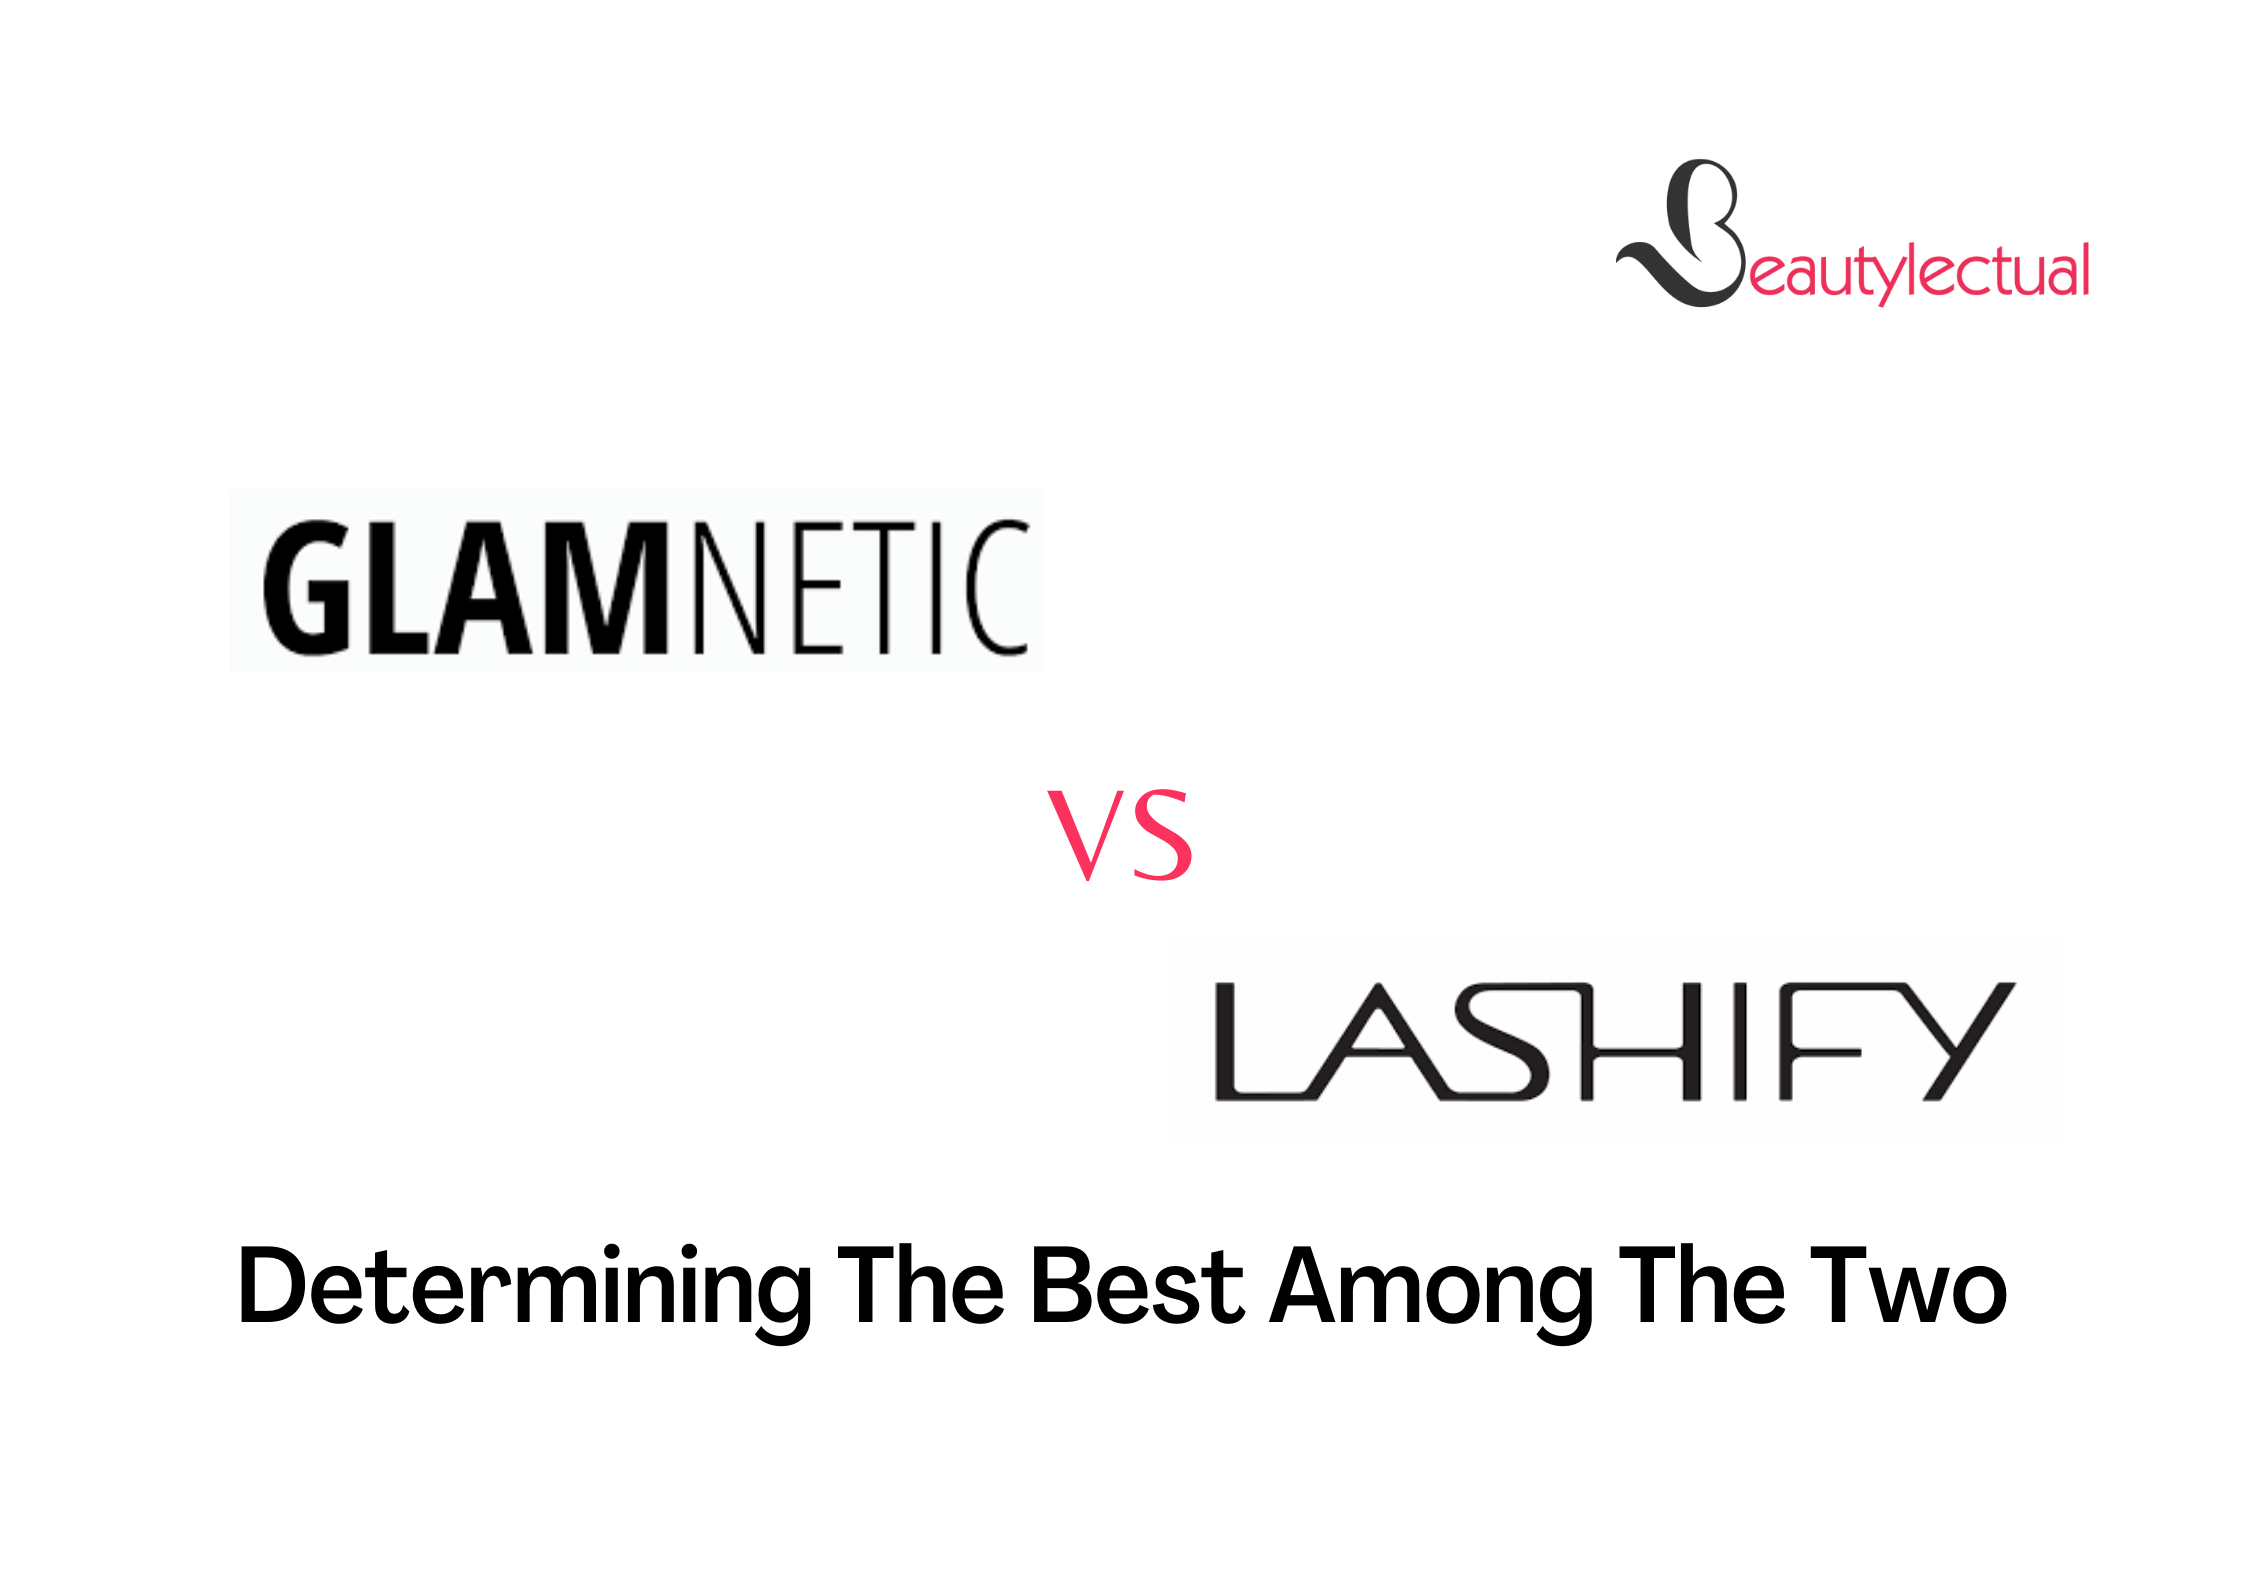 Glamnetic VS Lashify